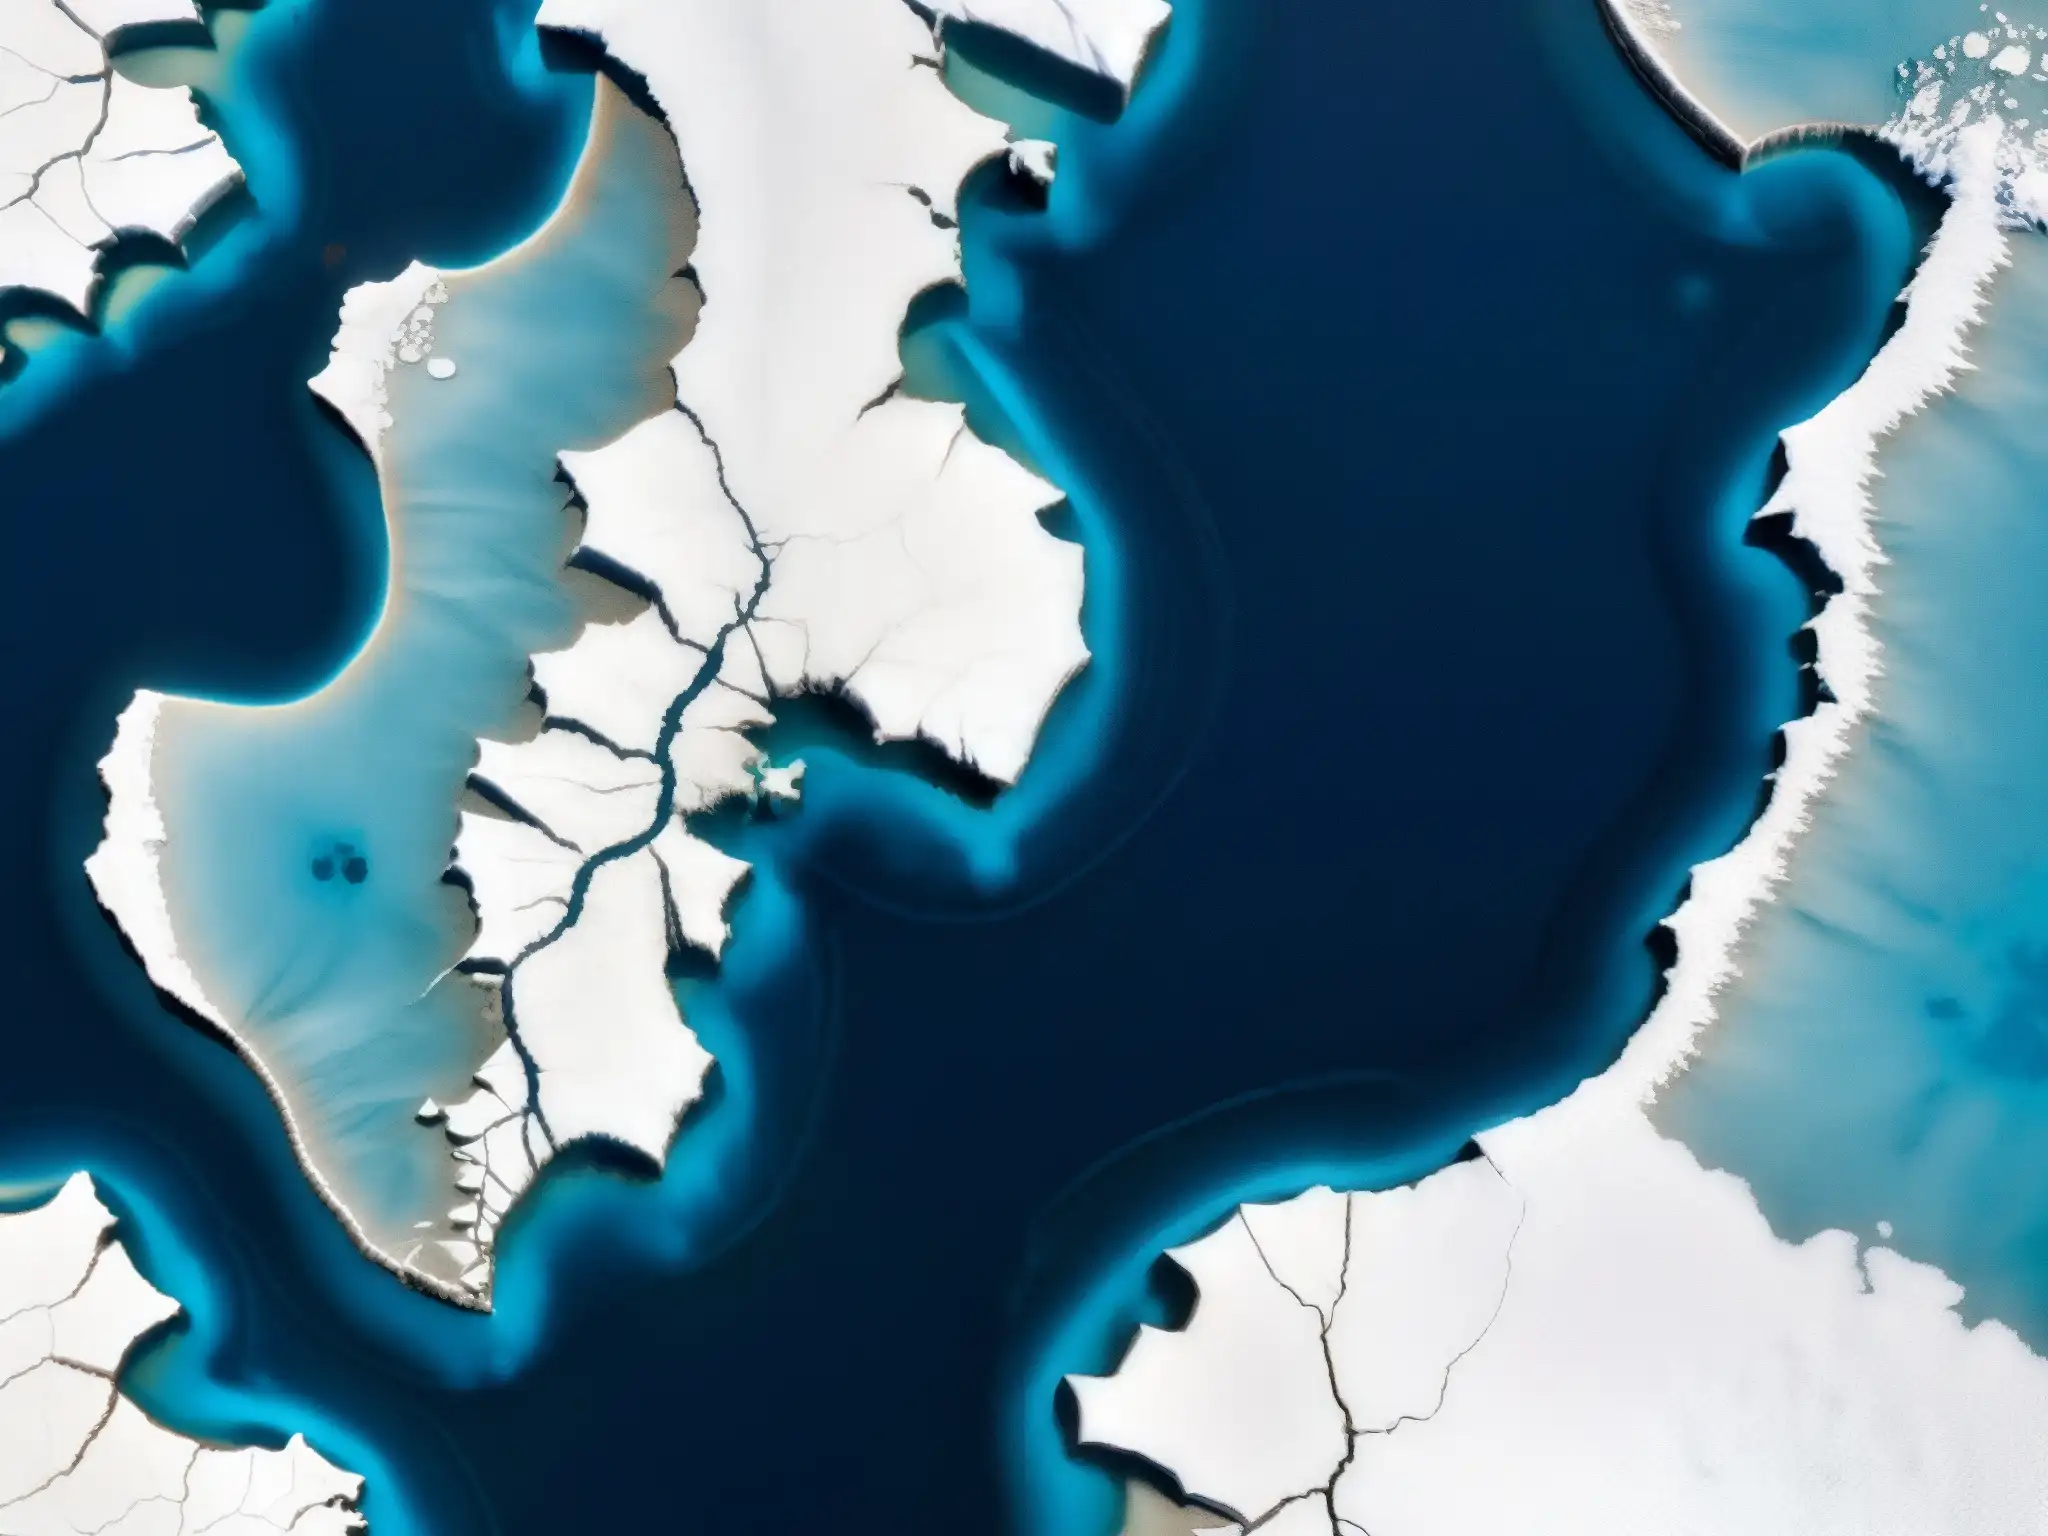 Imagen impactante del deshielo en el Ártico, mostrando la fragilidad del hielo polar y su impacto en el clima